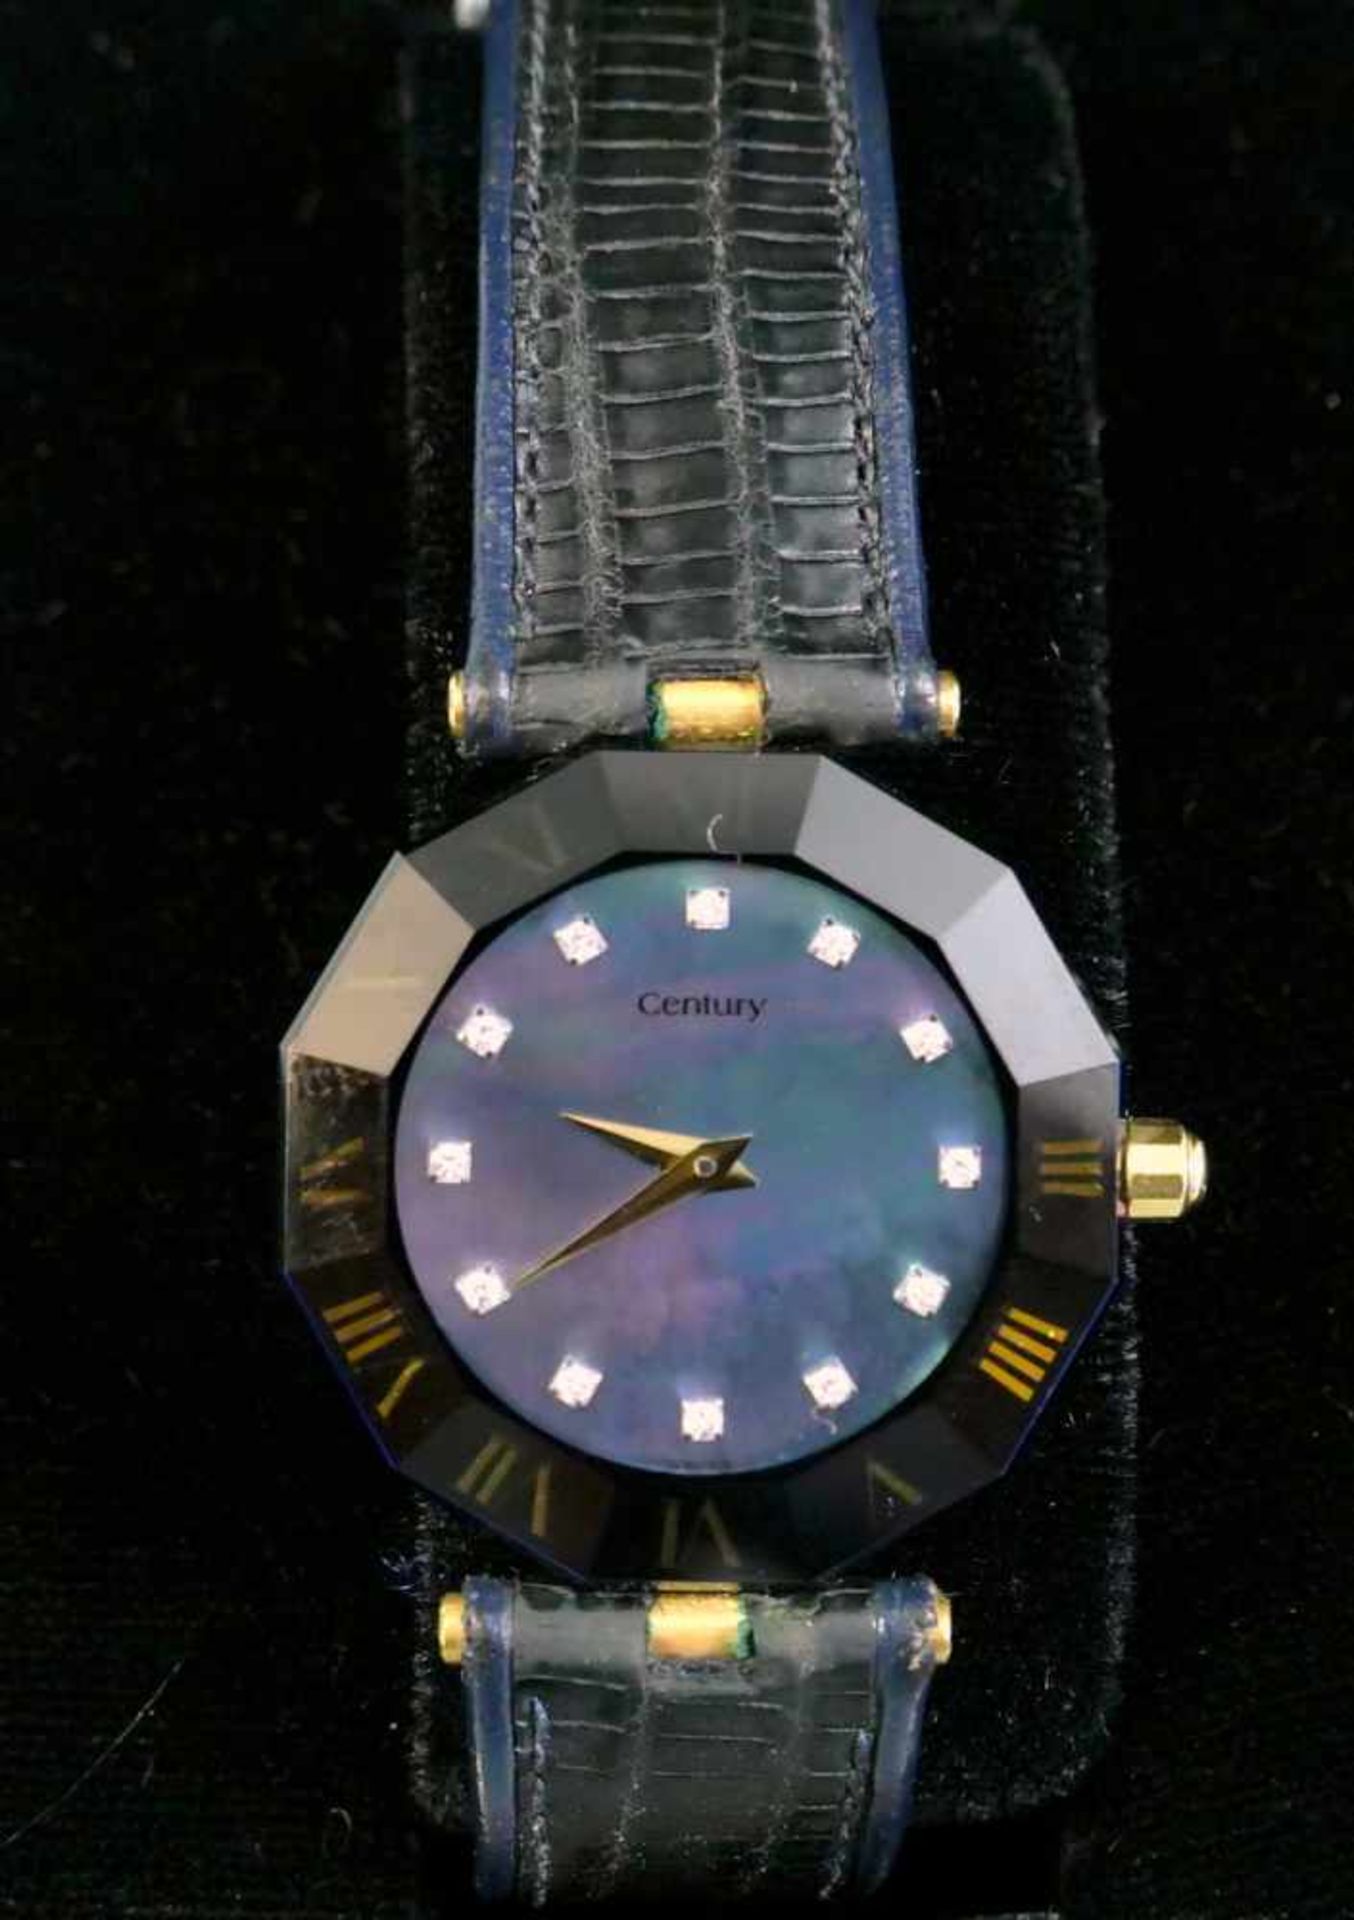 Century, Feine Damen-ArmbanduhrArmbanduhr der Marke Century in Nidau bei Biel, bekannt durch